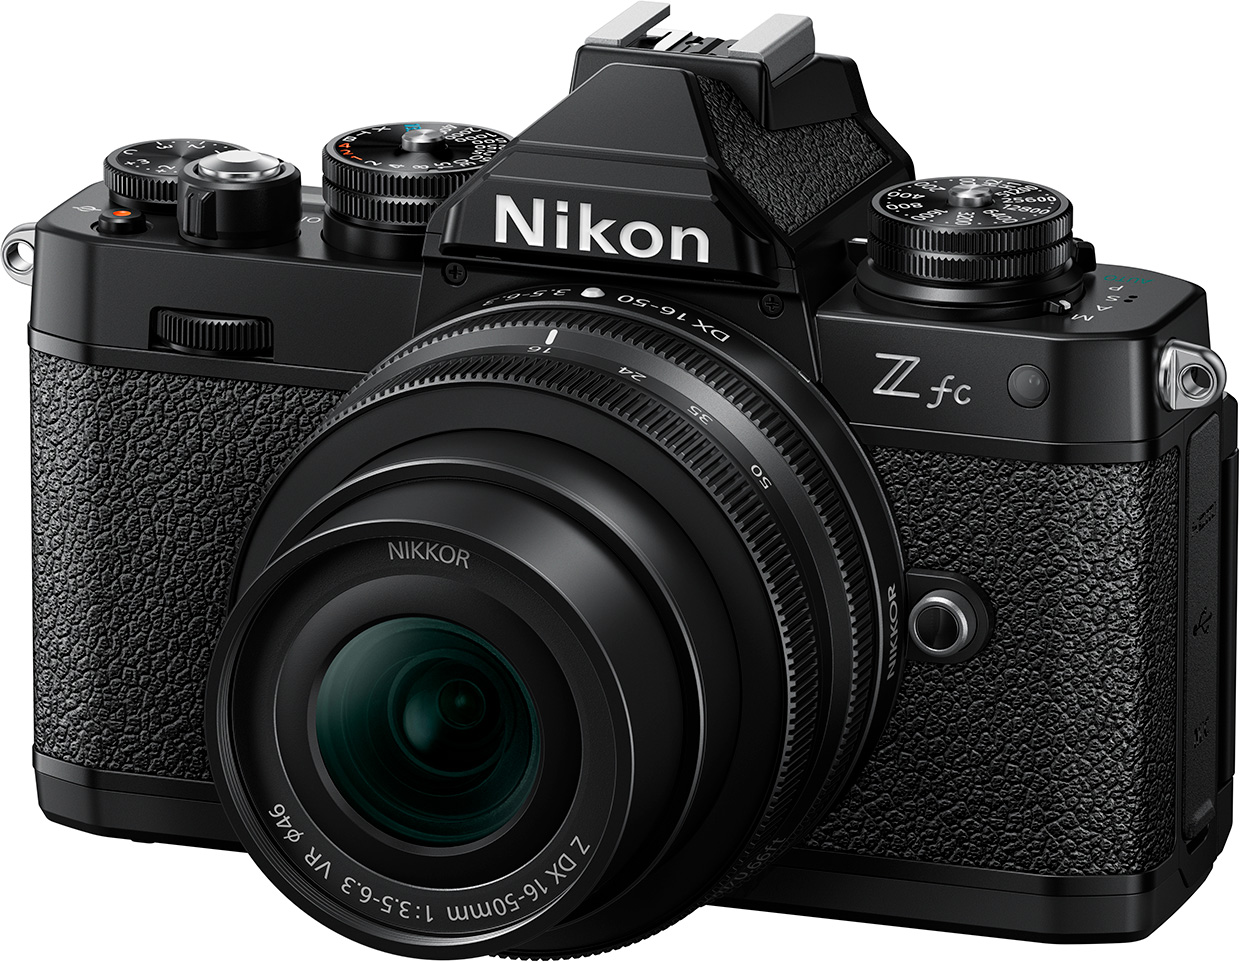 APS-Cサイズミラーレスカメラ「ニコンZ fc」の新色ブラックを発売